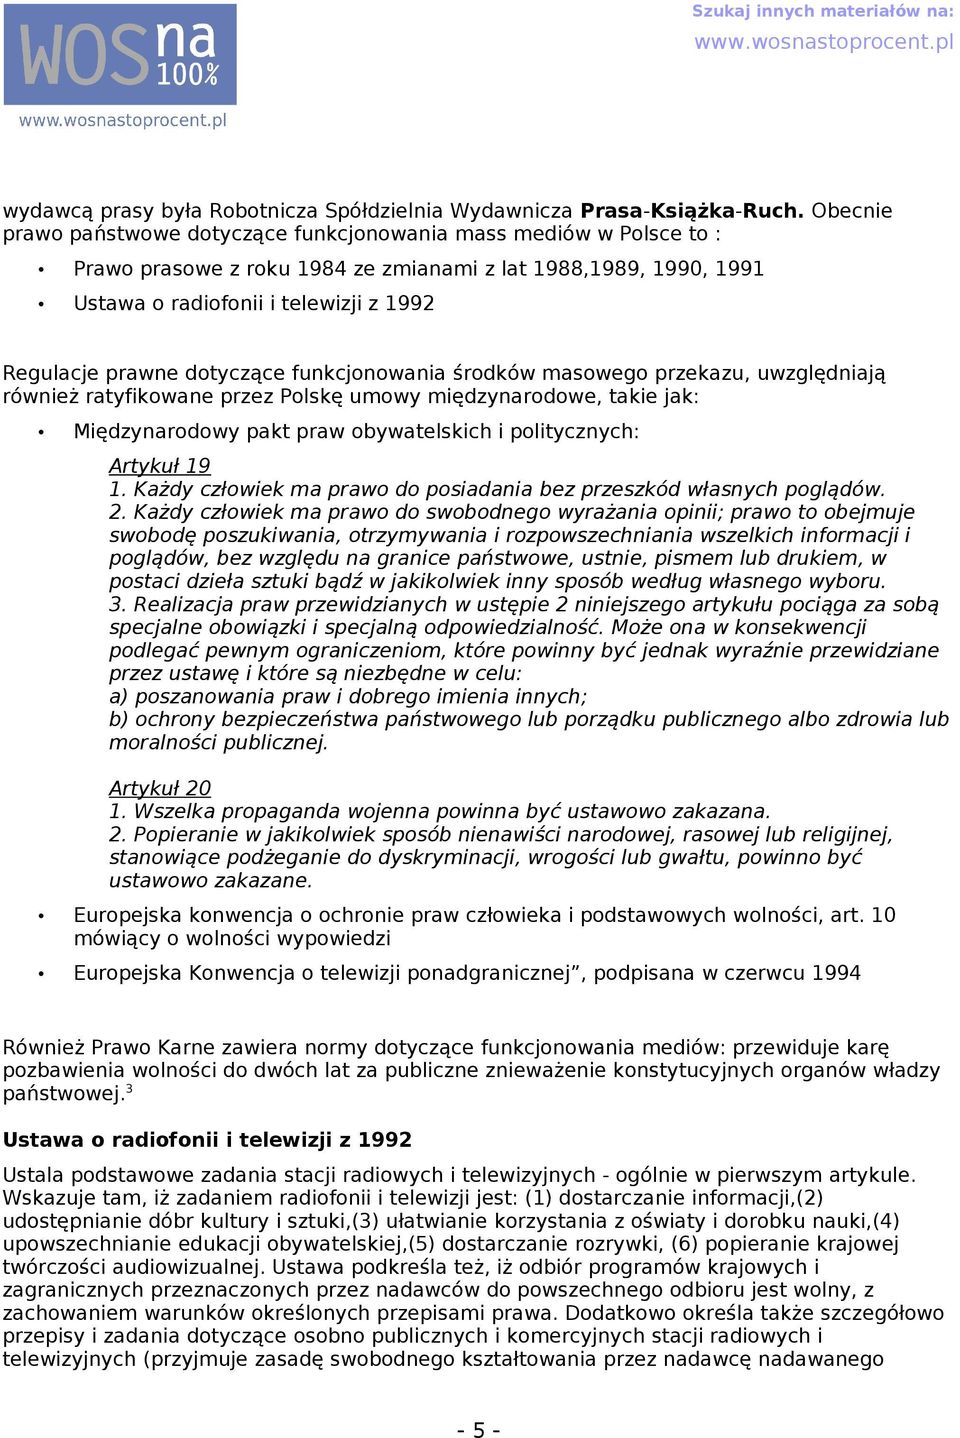 funkcjonowni środków msowego przekzu, uwzględniją również rtyfikowne przez Polskę umowy międzynrodowe, tkie jk: Międzynrodowy pkt prw obywtelskich i politycznych: Artykuł 19 1.